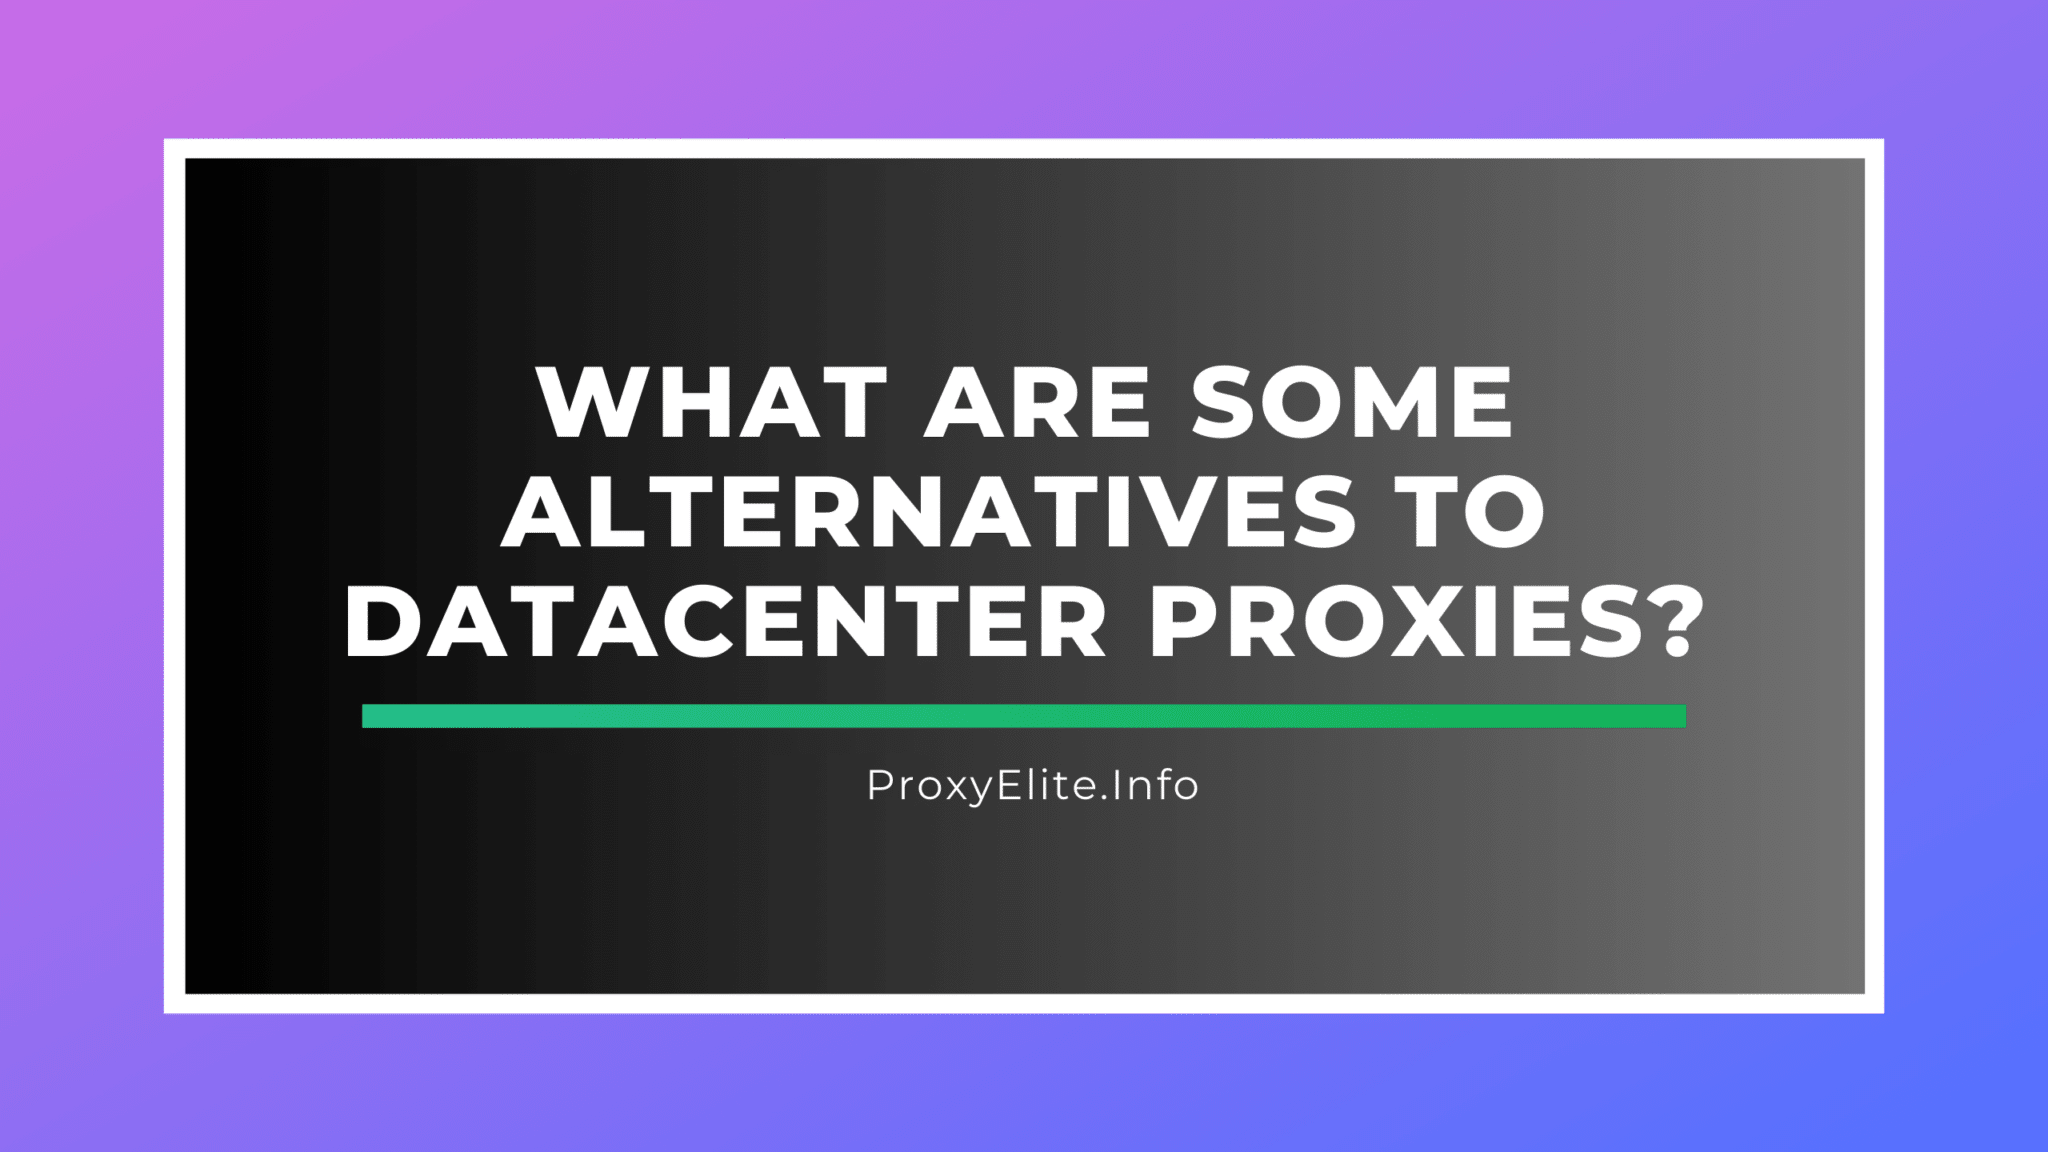 Quais são algumas alternativas aos proxies de datacenter?